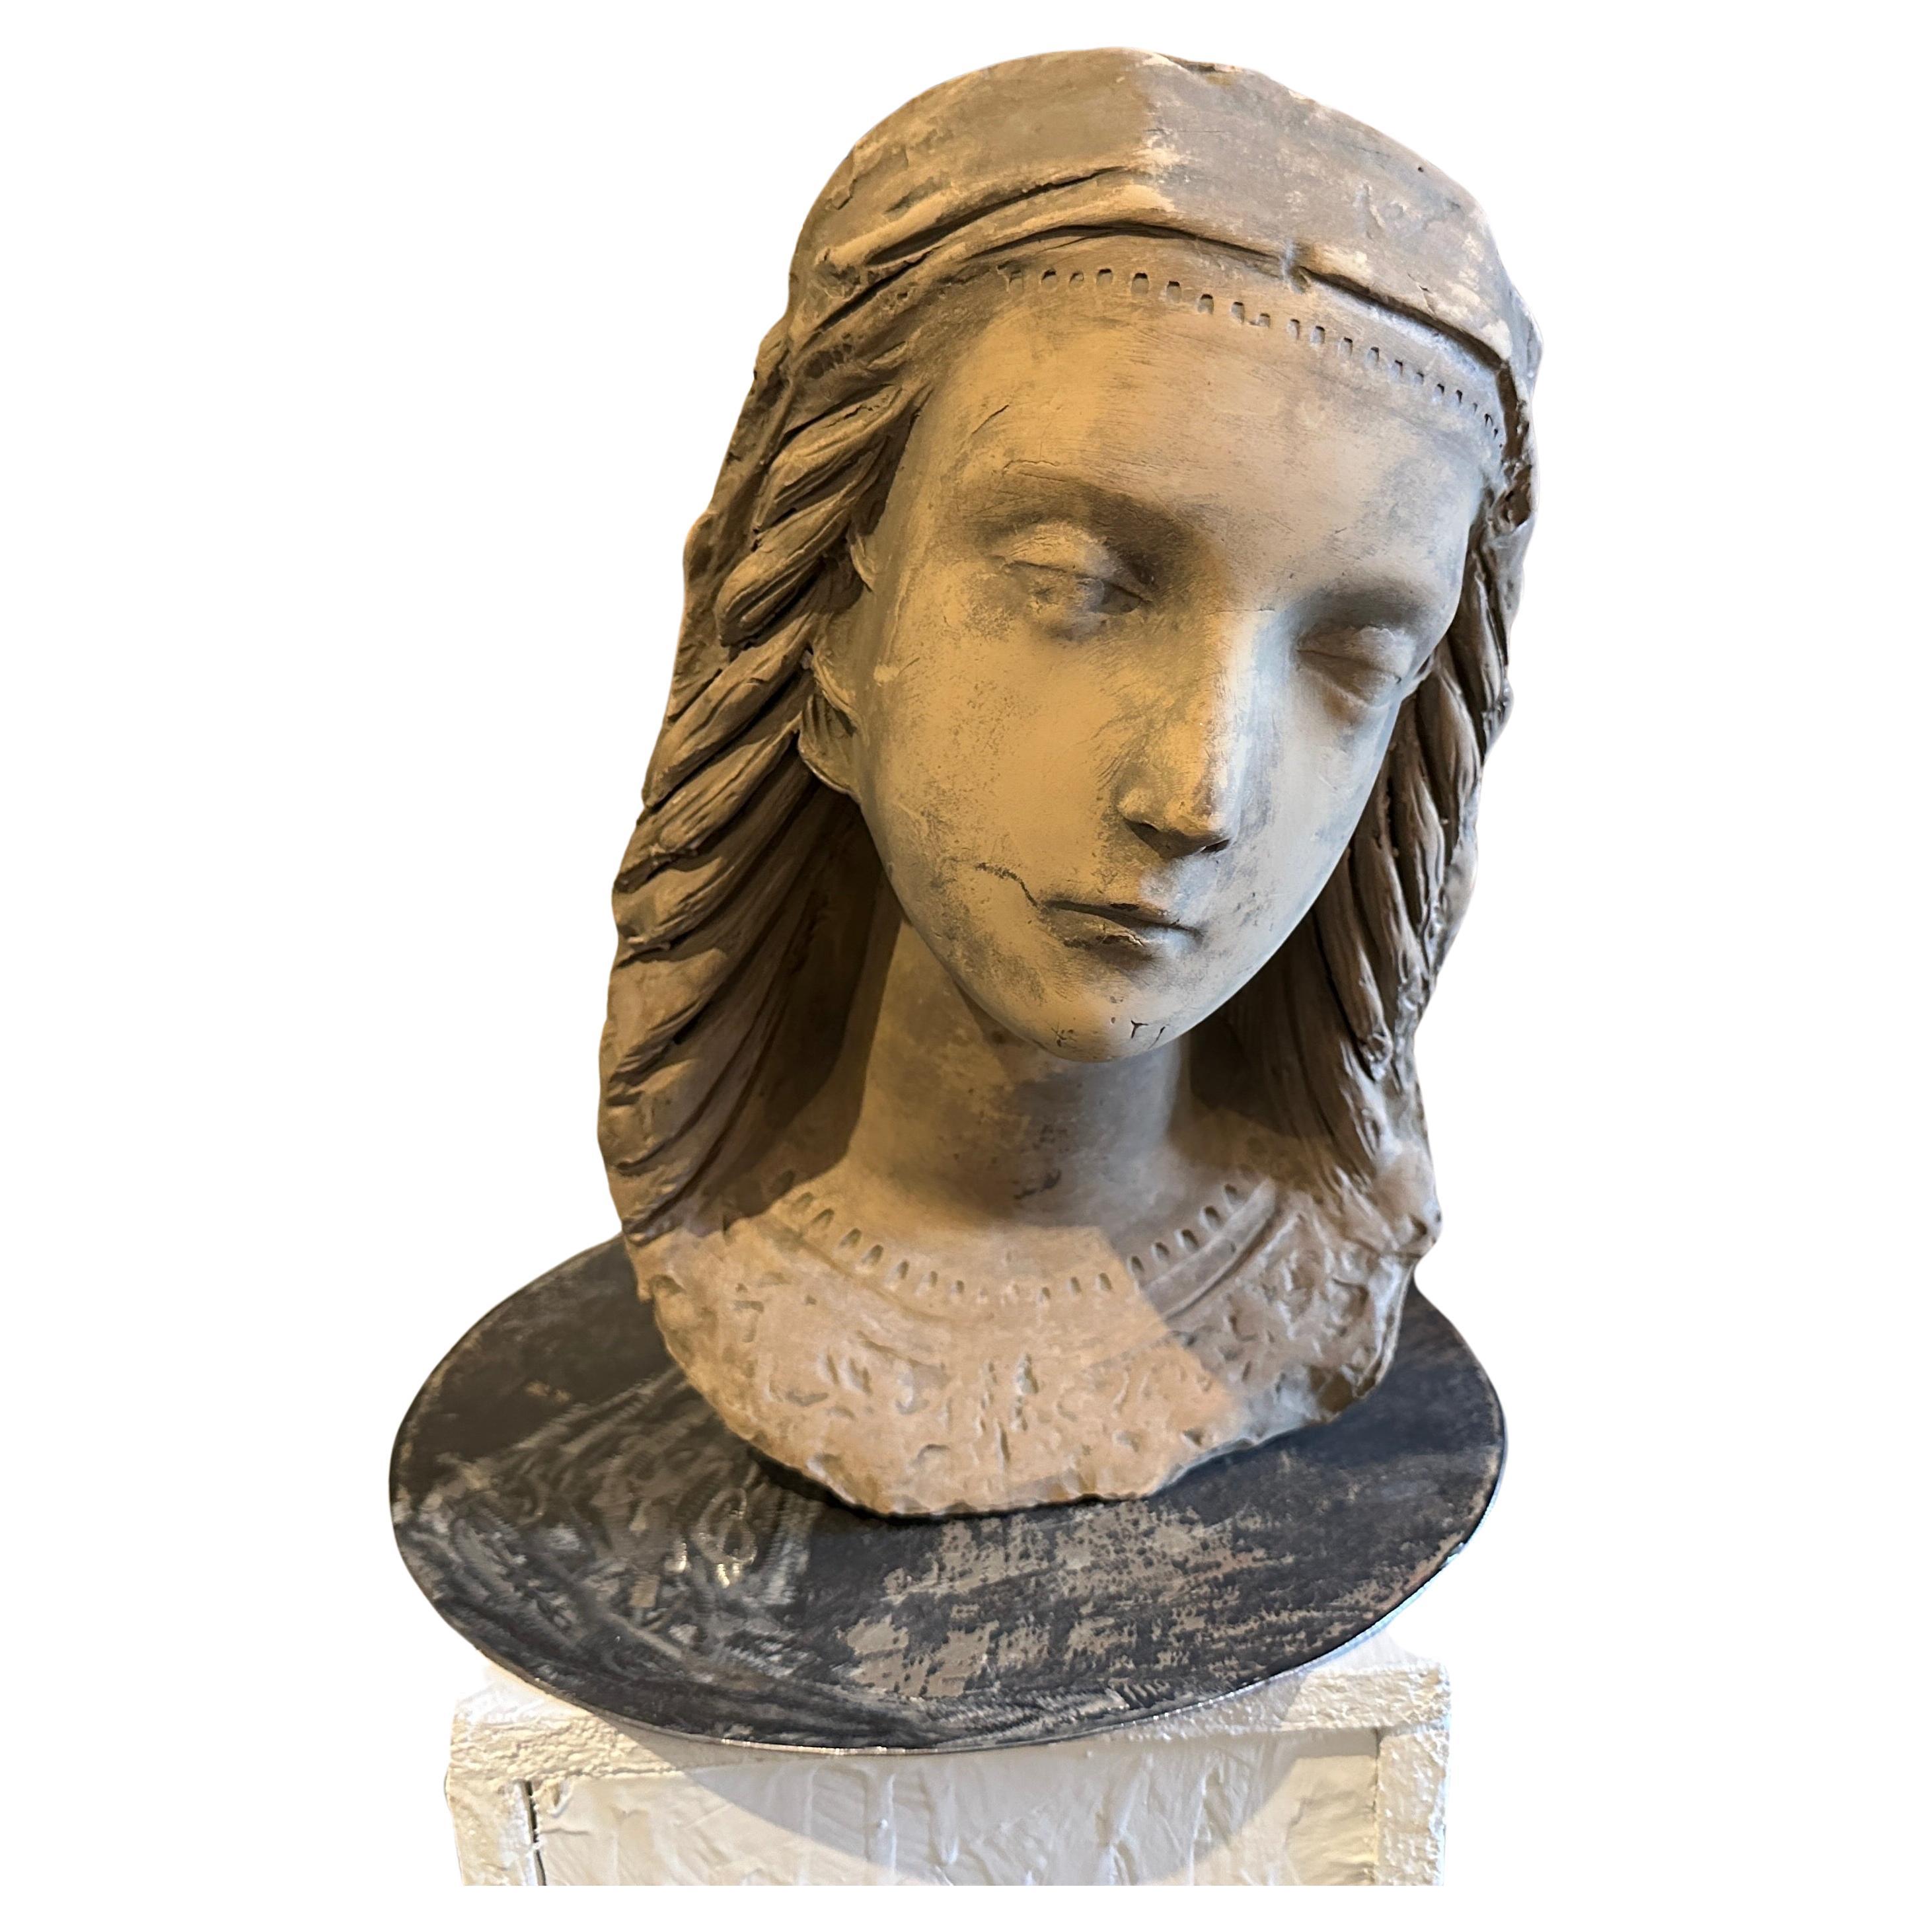 Dieser Terrakottakopf einer jungen Frau auf einem neuen Eisensockel ist ein eindrucksvolles skulpturales Kunstwerk, das die für den Jugendstil charakteristischen organischen Formen und stilisierten Motive mit den ausgeprägten regionalen Einflüssen